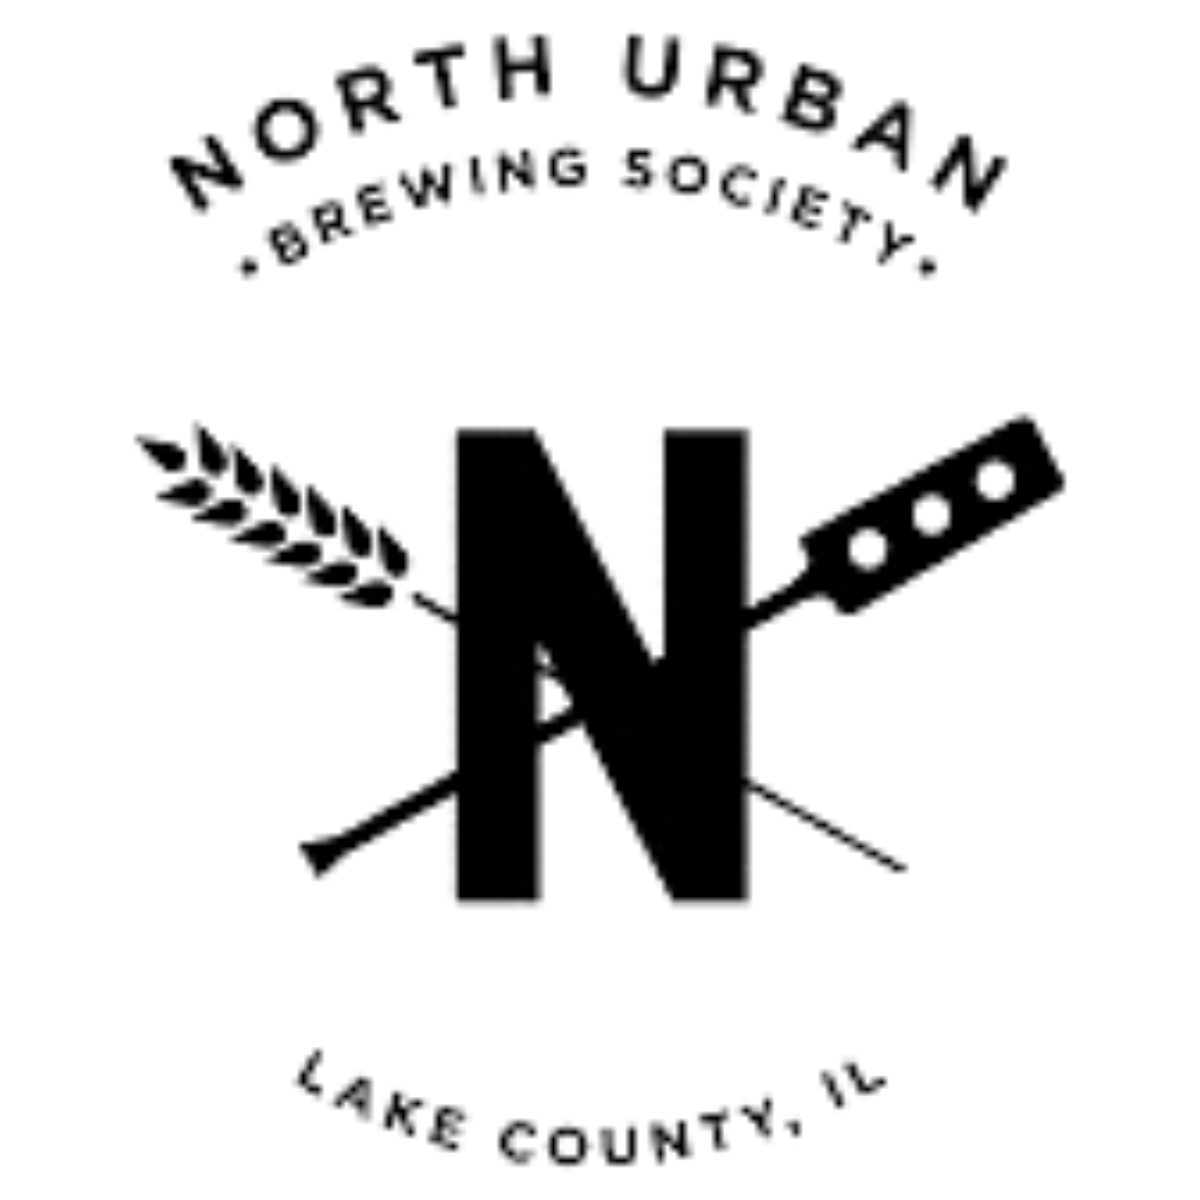 North Urban Brewing Society.png